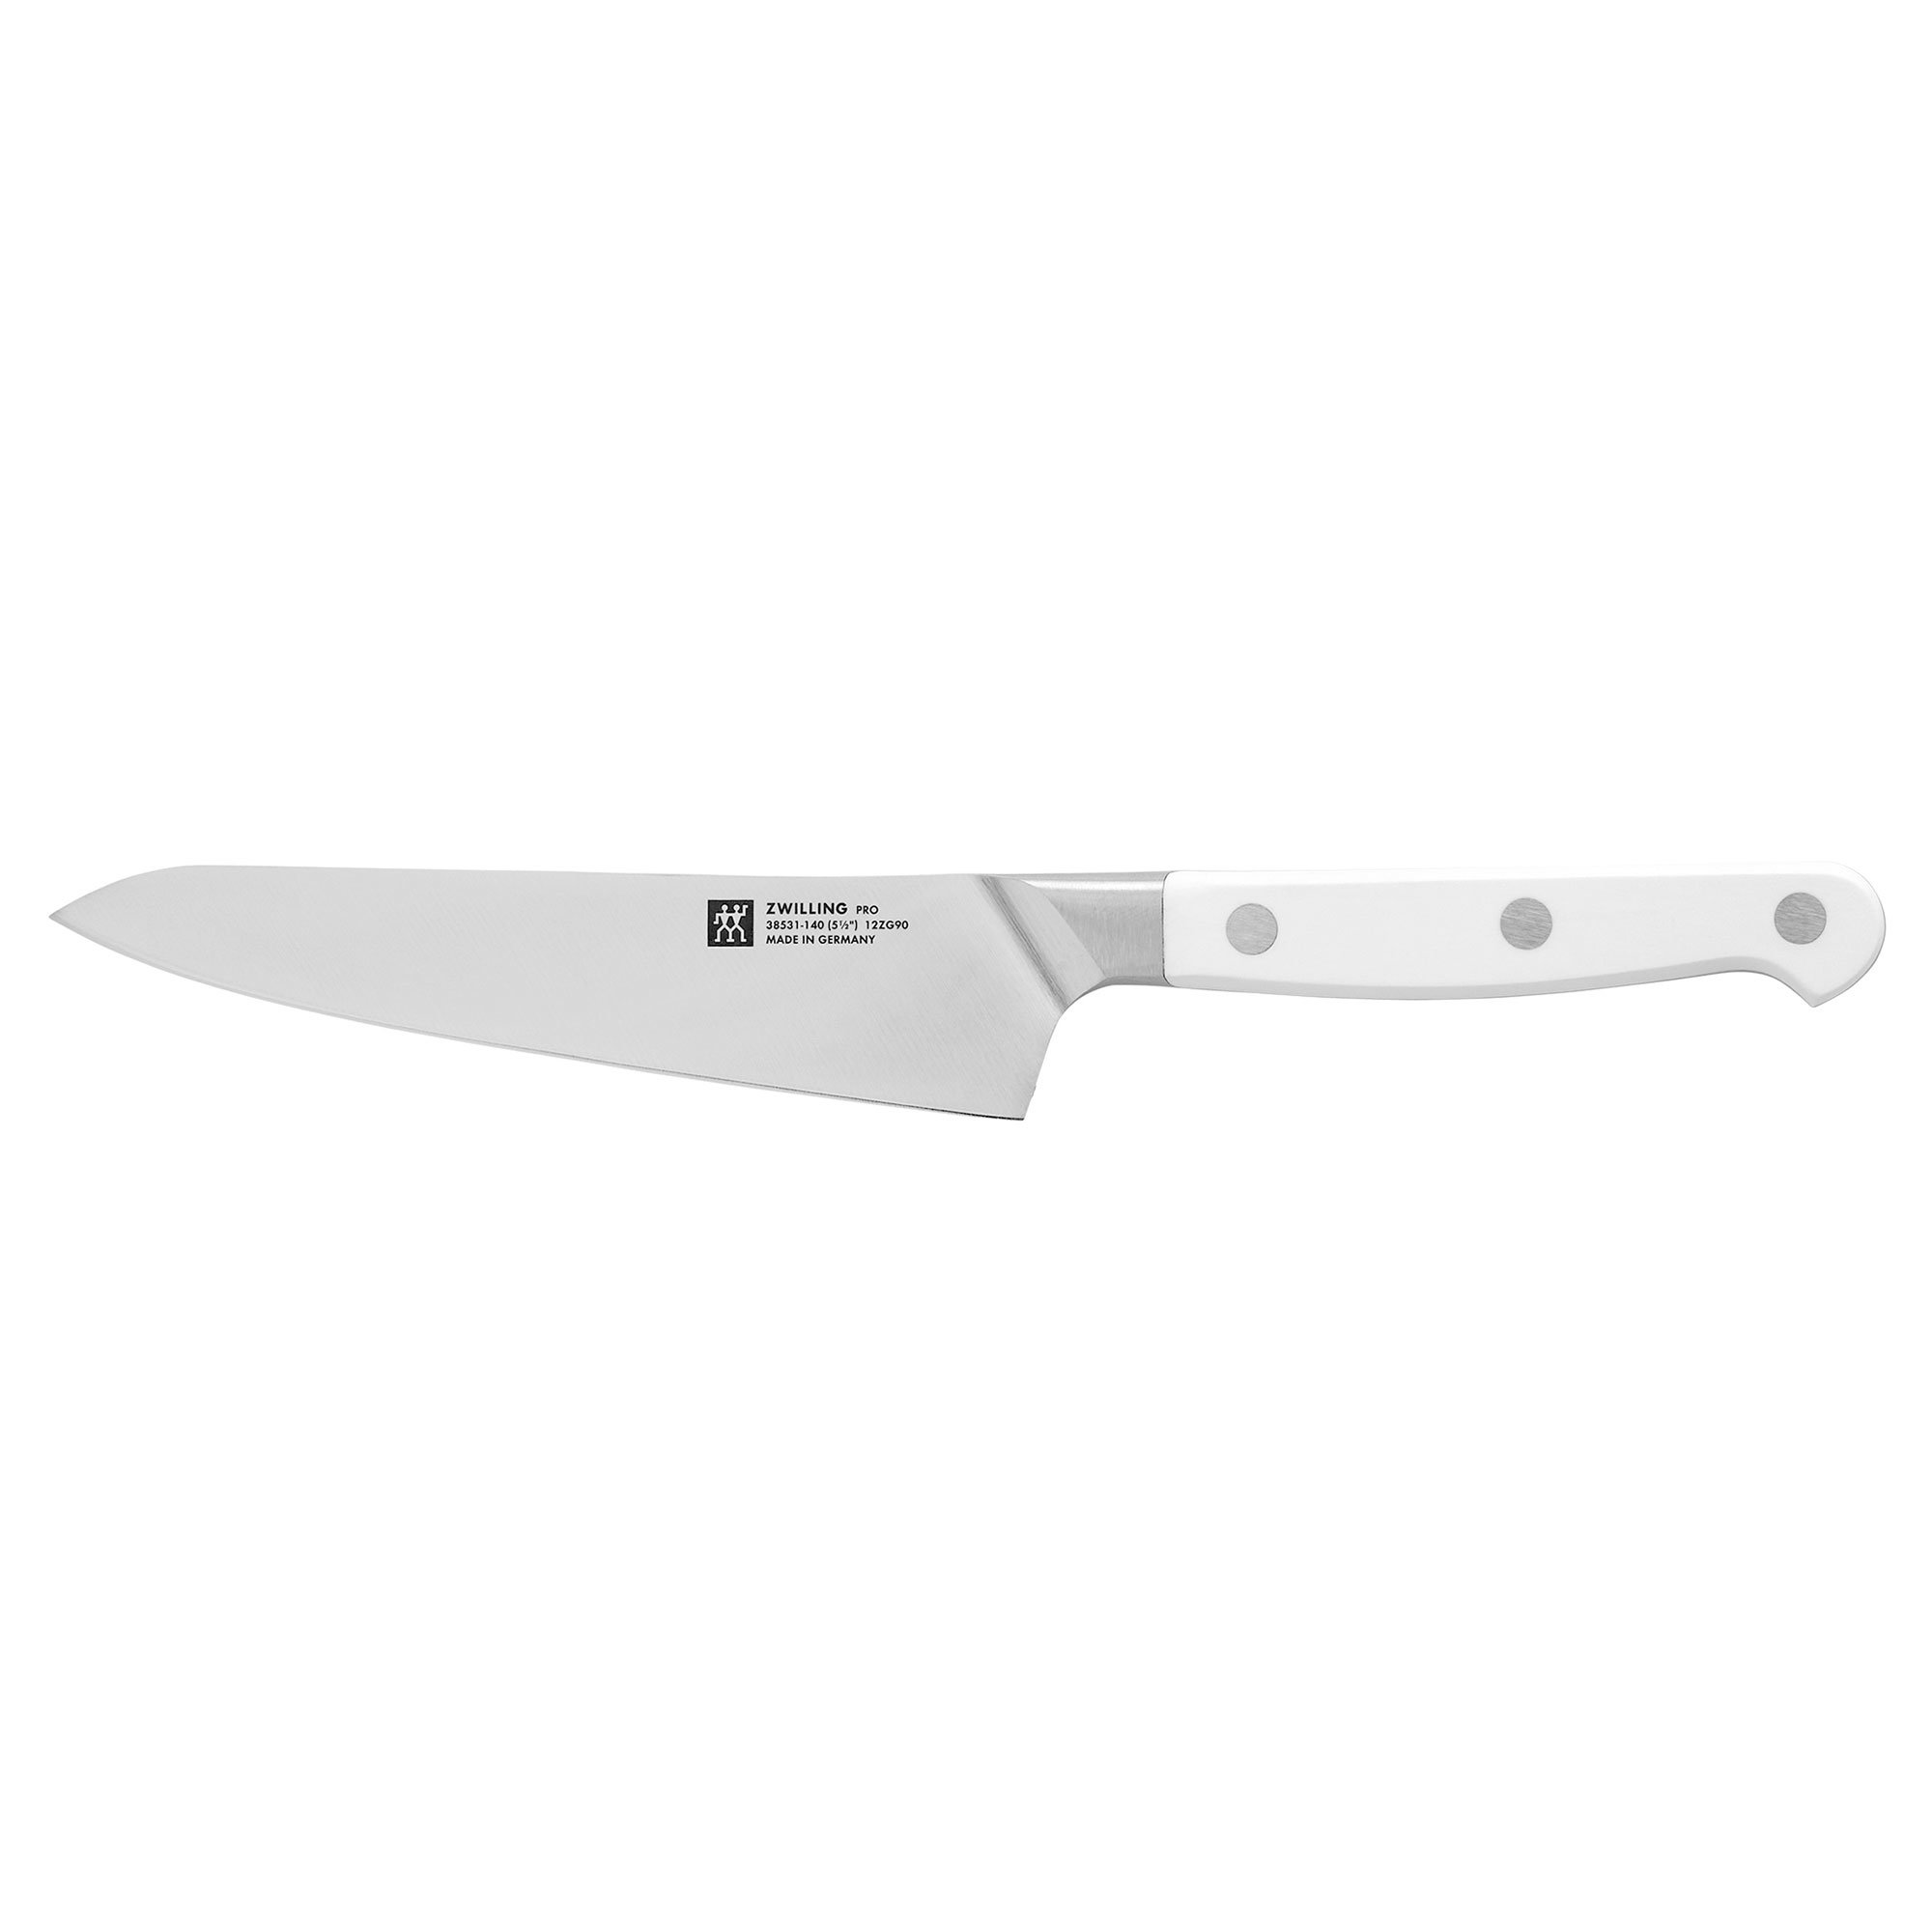 Zwilling Pro Le Blanc kompakt kockkniv 14 cm